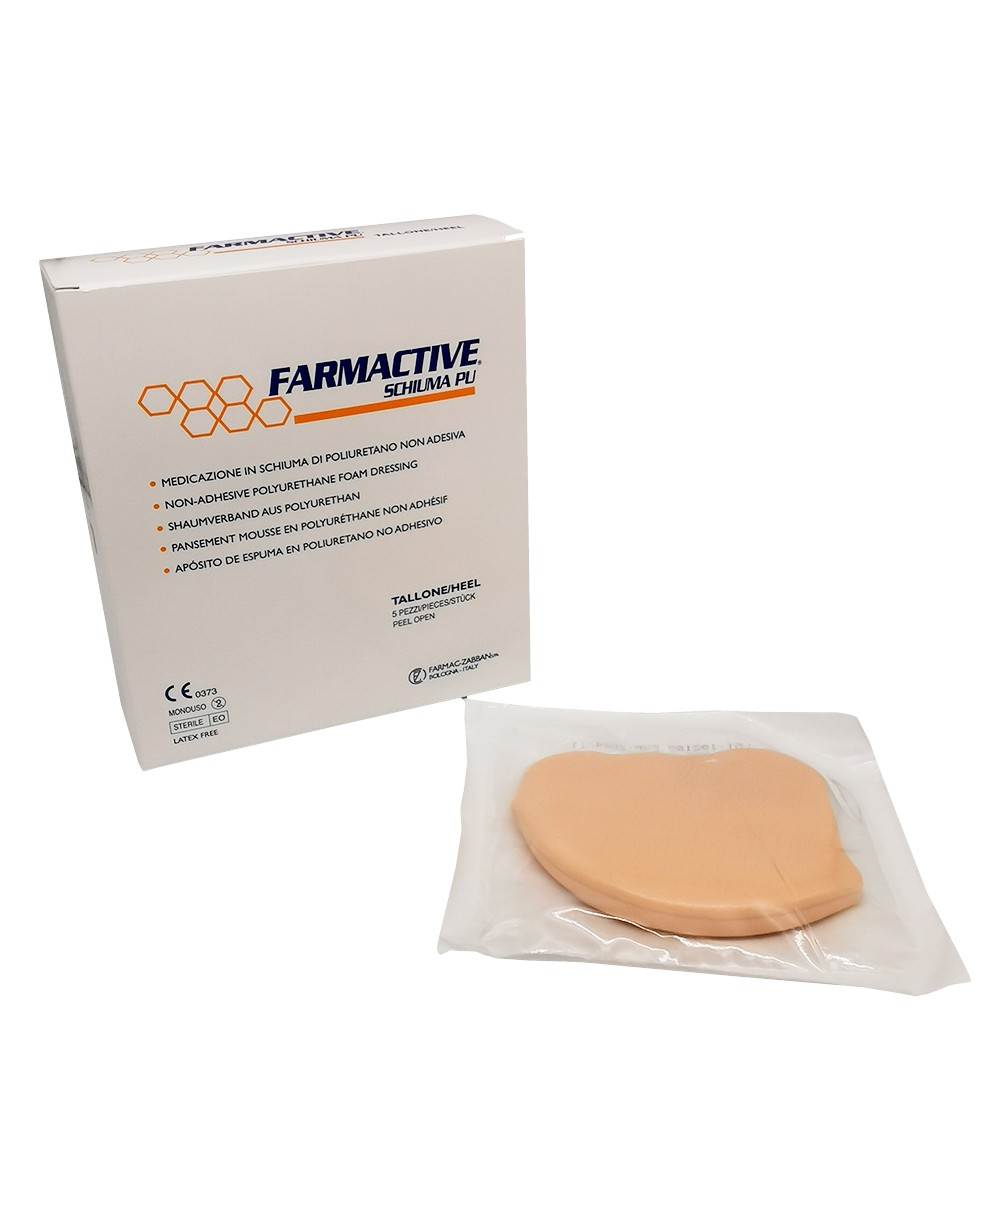 Medicazione Avanzata Sterile Antidecubito per Tallone in Schiuma di Poliuretano Non Adesiva Farmactive Schiuma PU - Confezione 